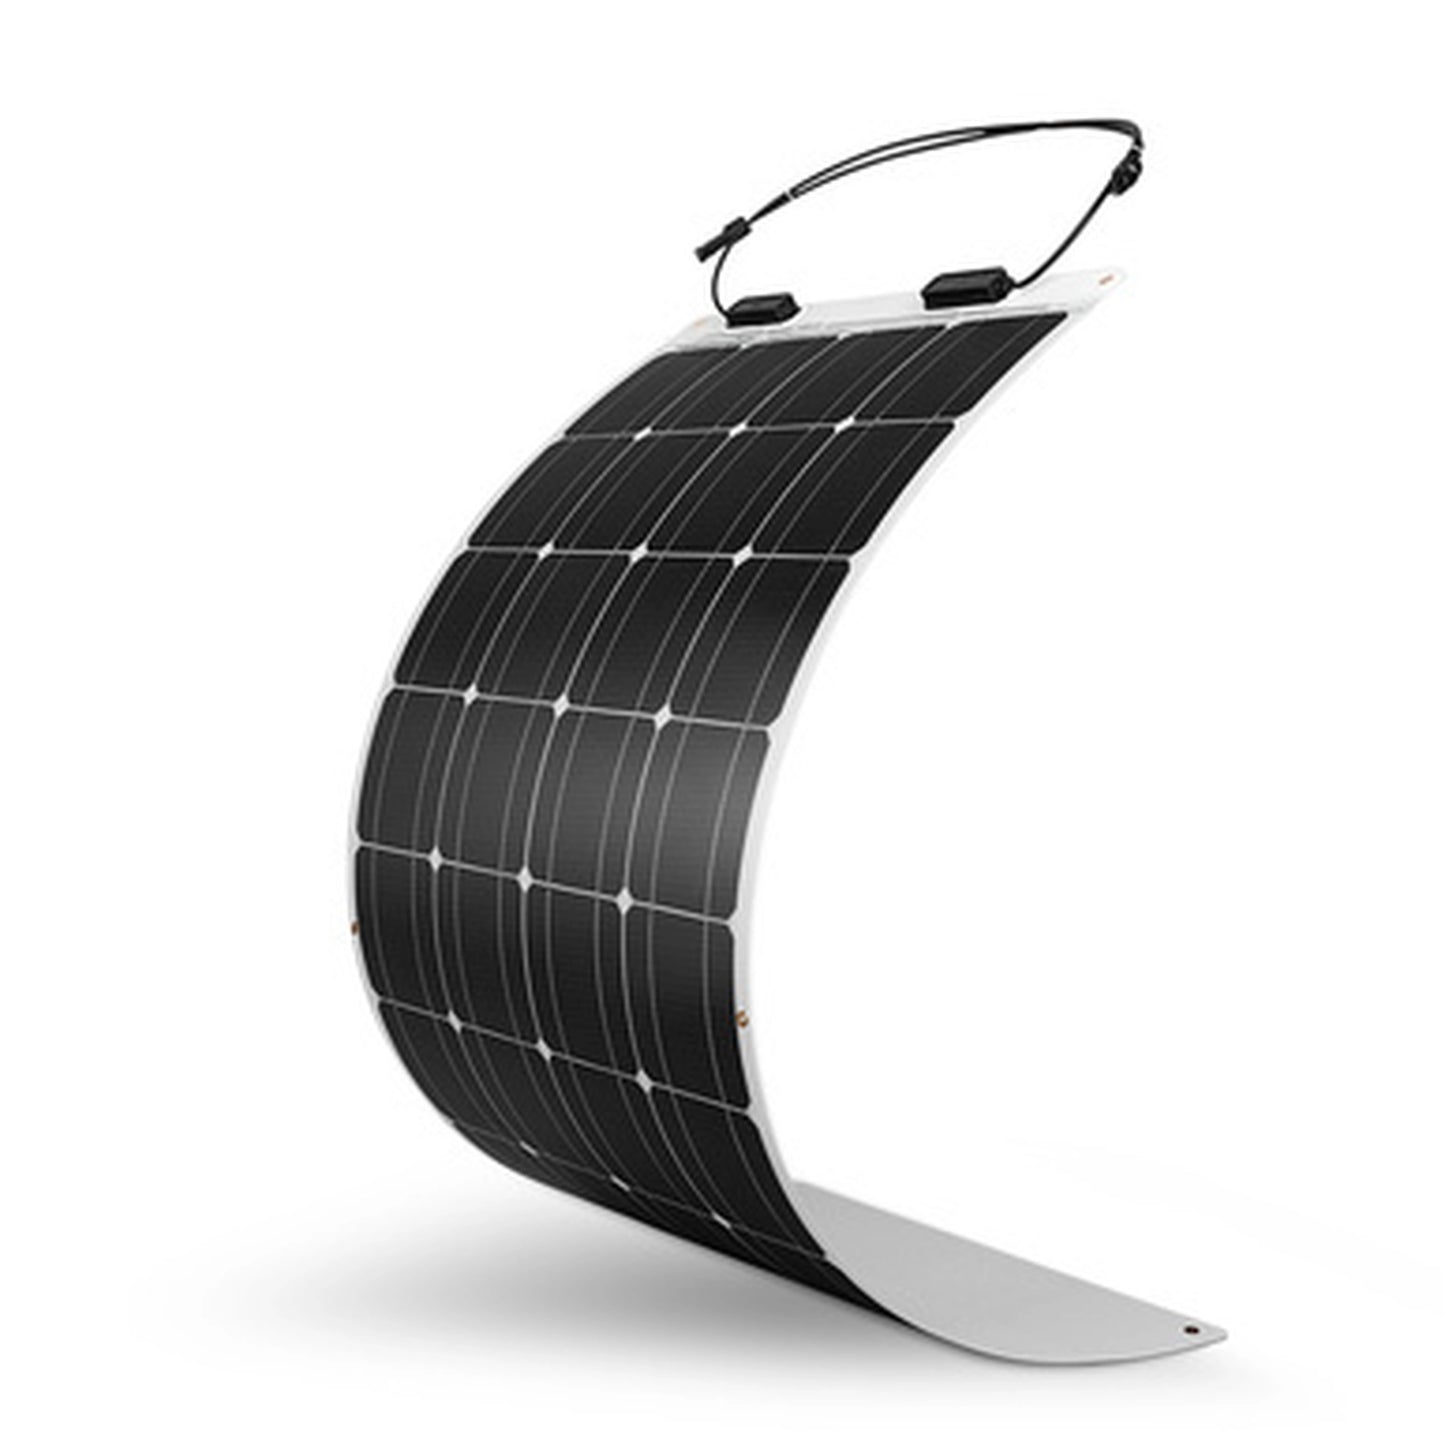 Renogy 200 Watt Solar Complete Kit for RV